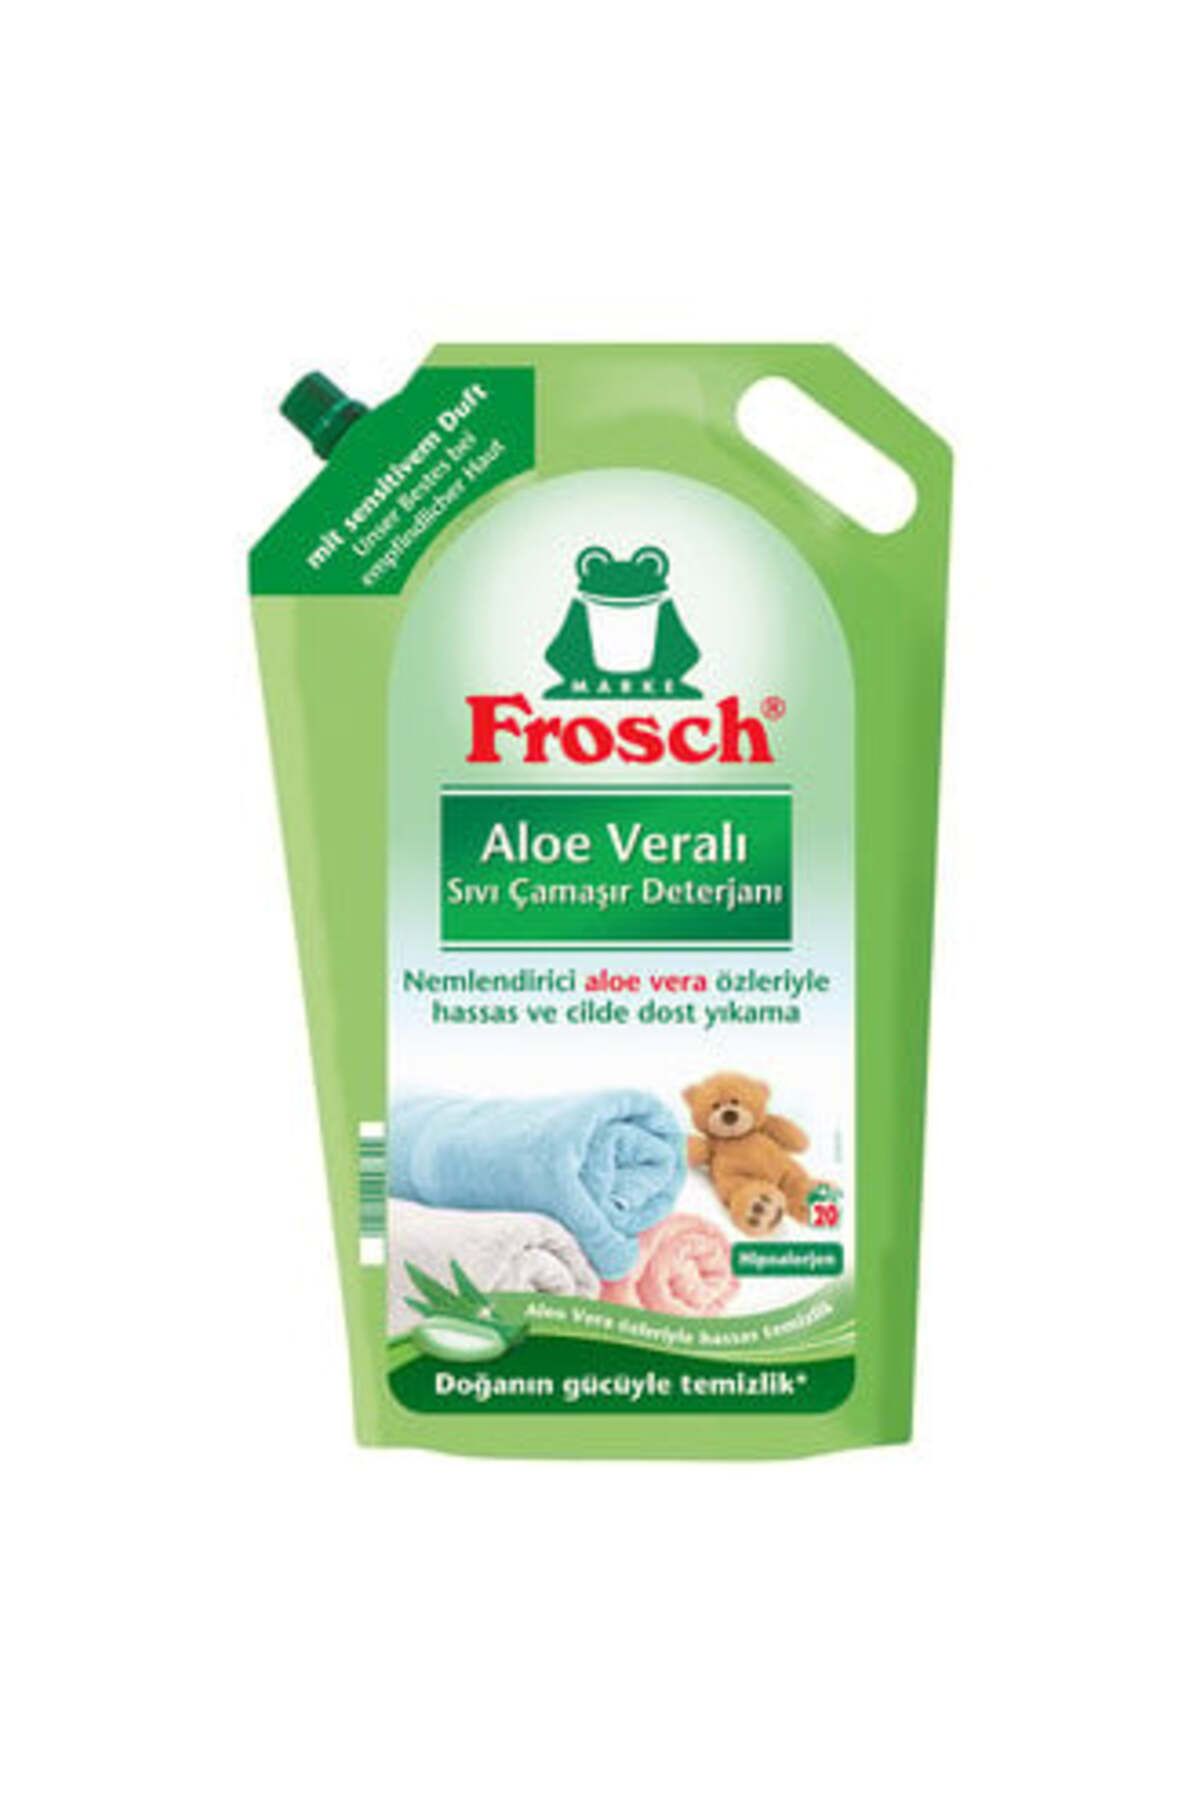 Frosch Sıvı Çamaşır Deterjanı Aloe Veralı 1.8 L ( 1 ADET )